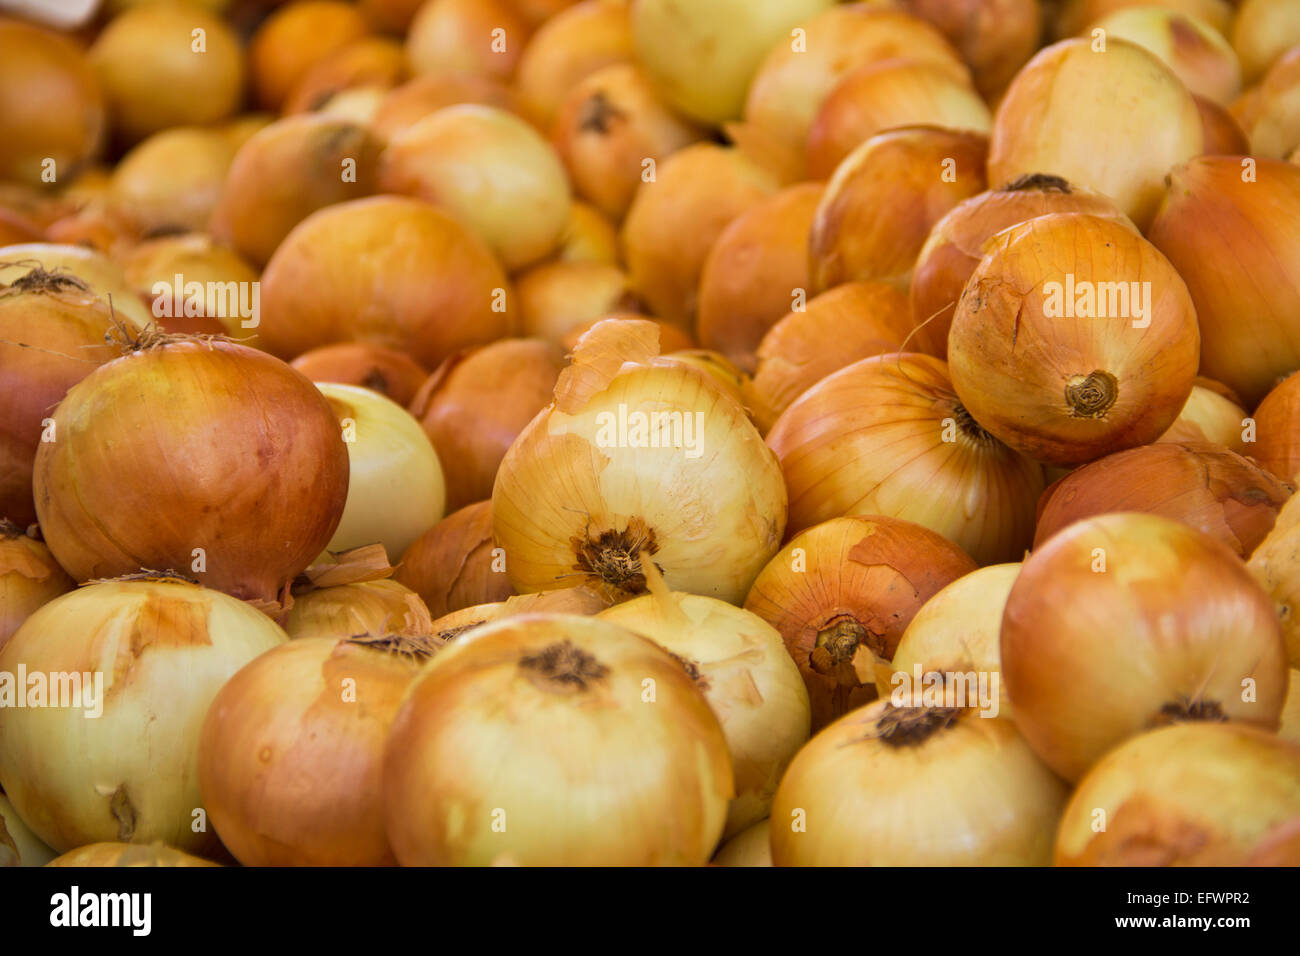 onions on market Stock Photo